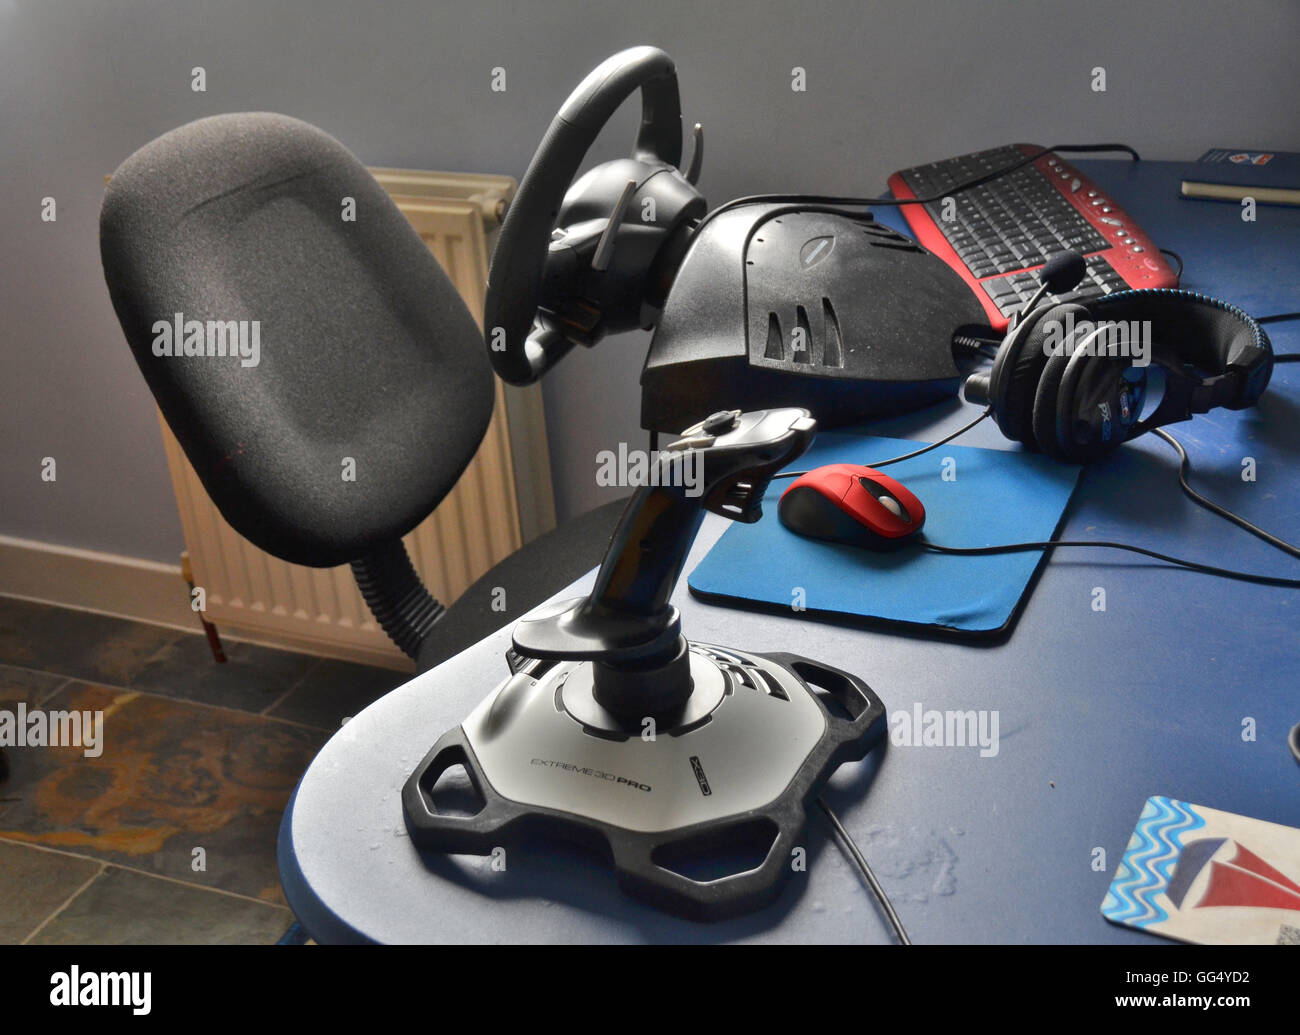 La plataforma para juegos, estación, incluidos los accesorios conectados a la PC, tales como joystick,auriculares, mouse, teclado volante. Foto de stock